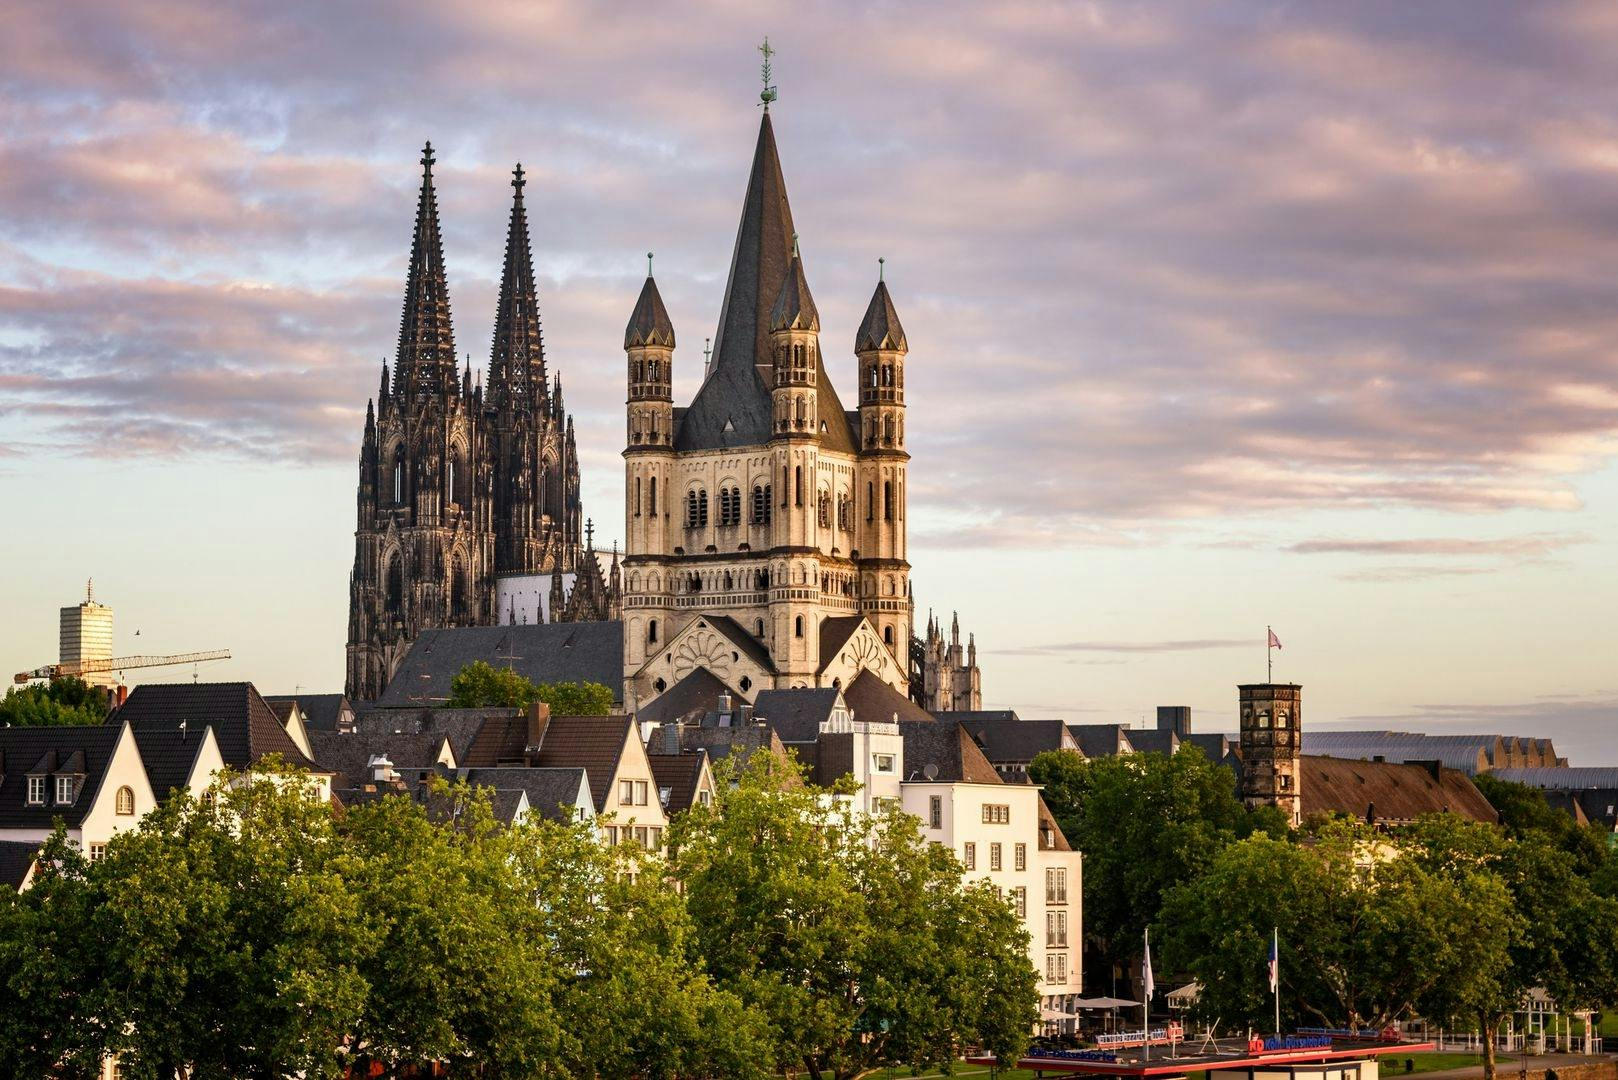 Selbstgeführte Audiotour durch Kölns Geschichte, Architektur und Bier